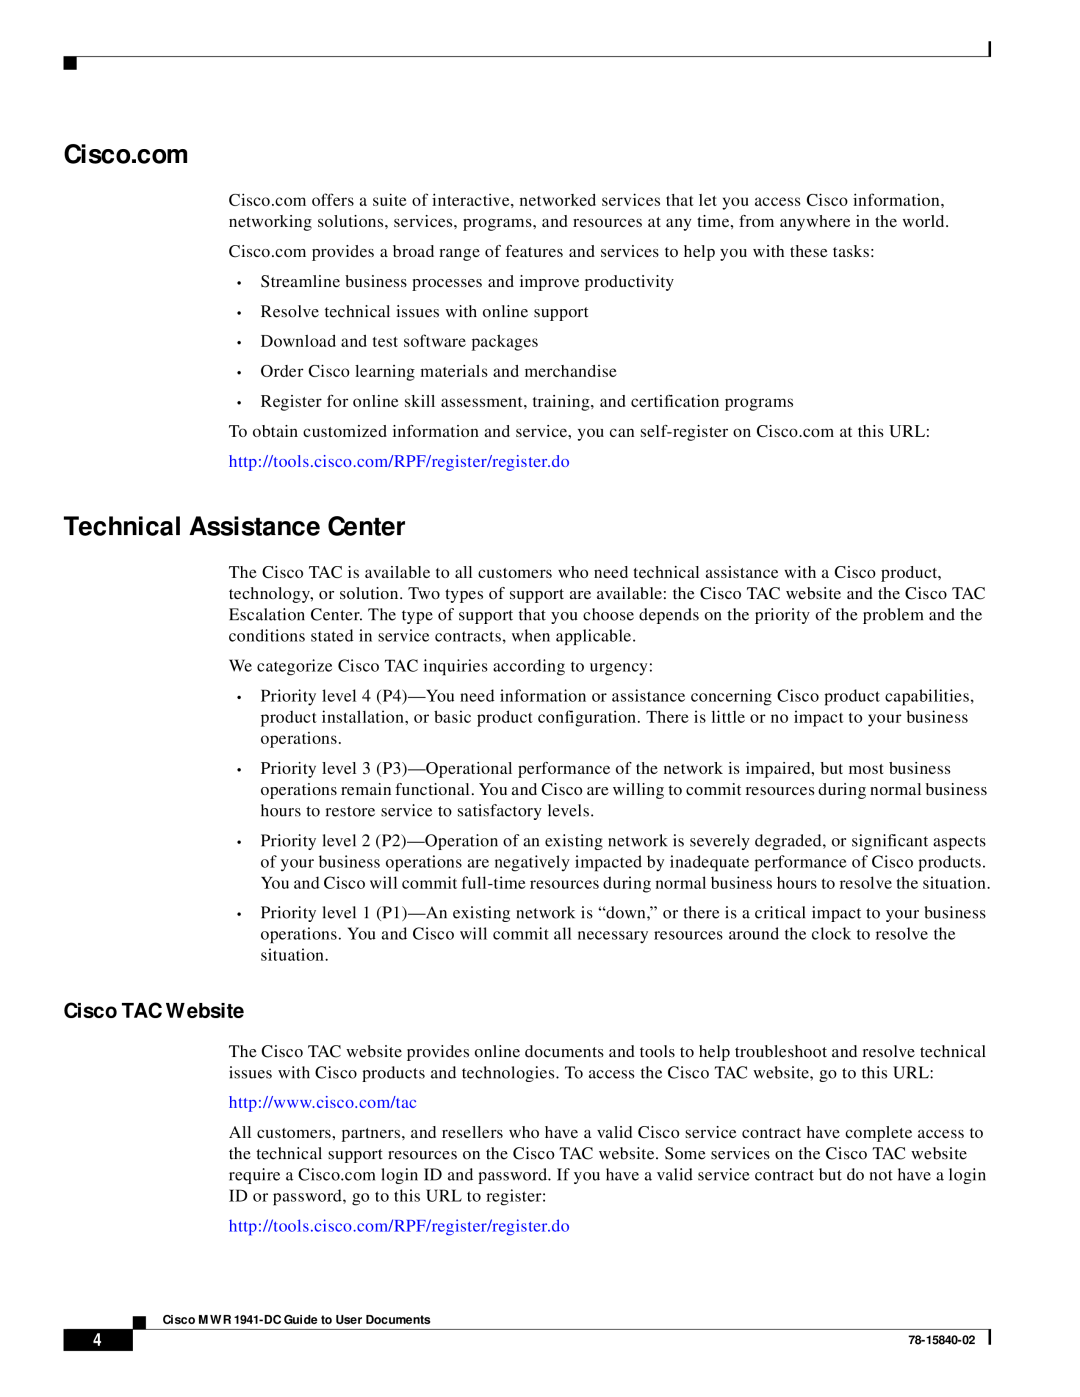 Cisco Systems 1941-DC configurationmanual Technical Assistance Center, Cisco TAC Website, Cisco.com 